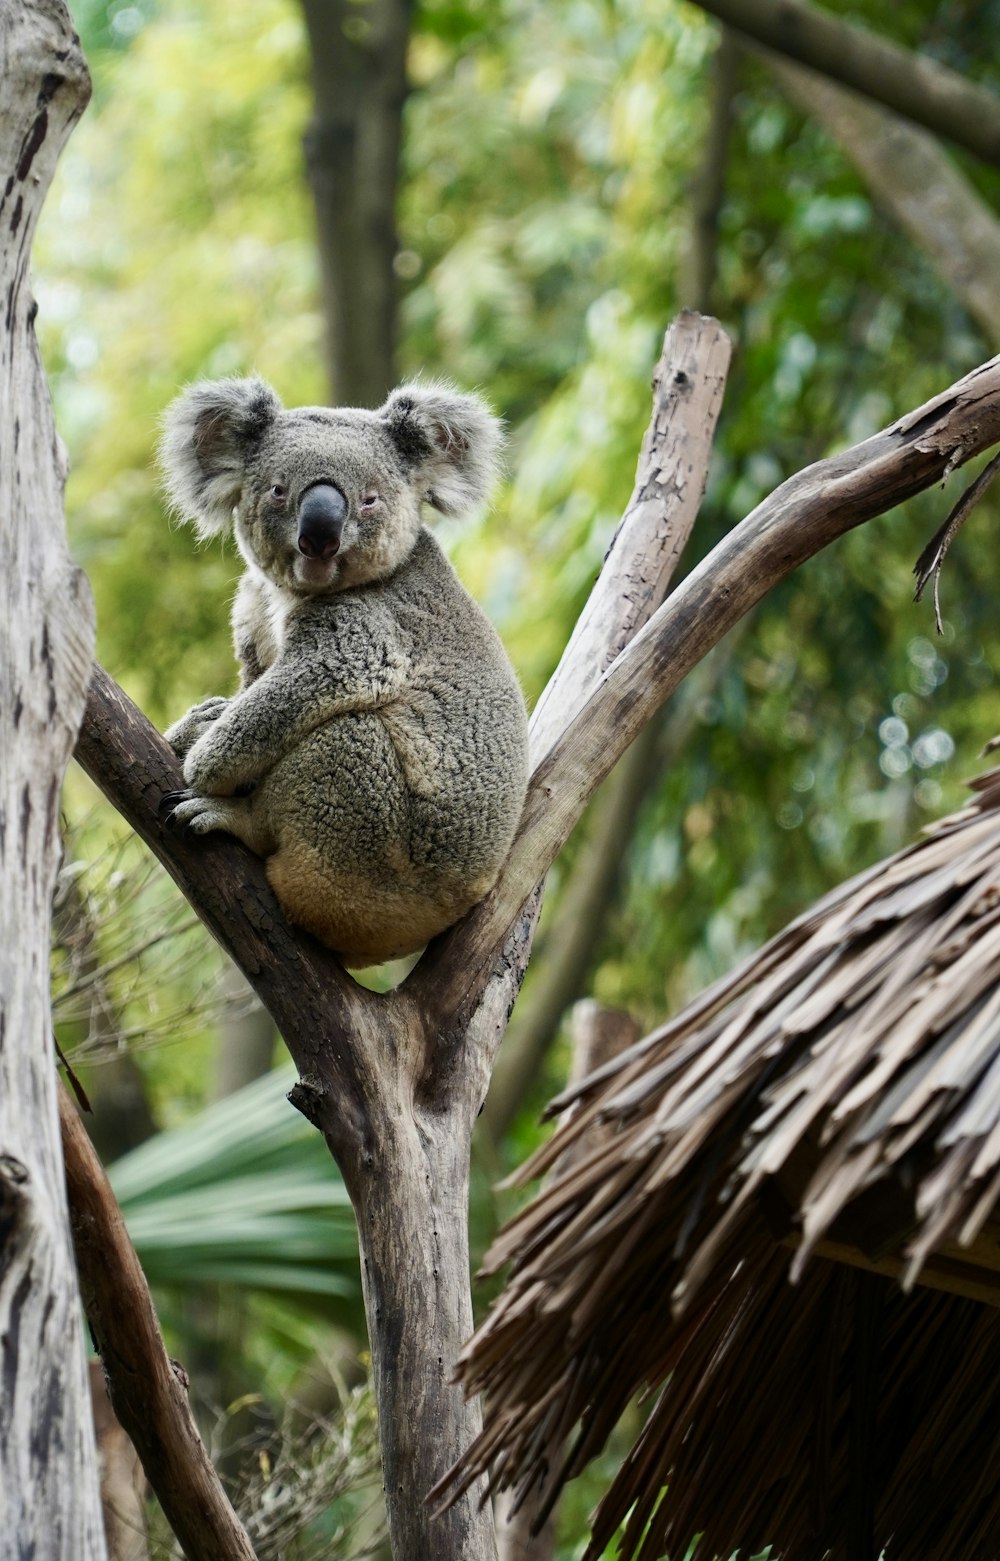 a koala is sitting on a tree branch